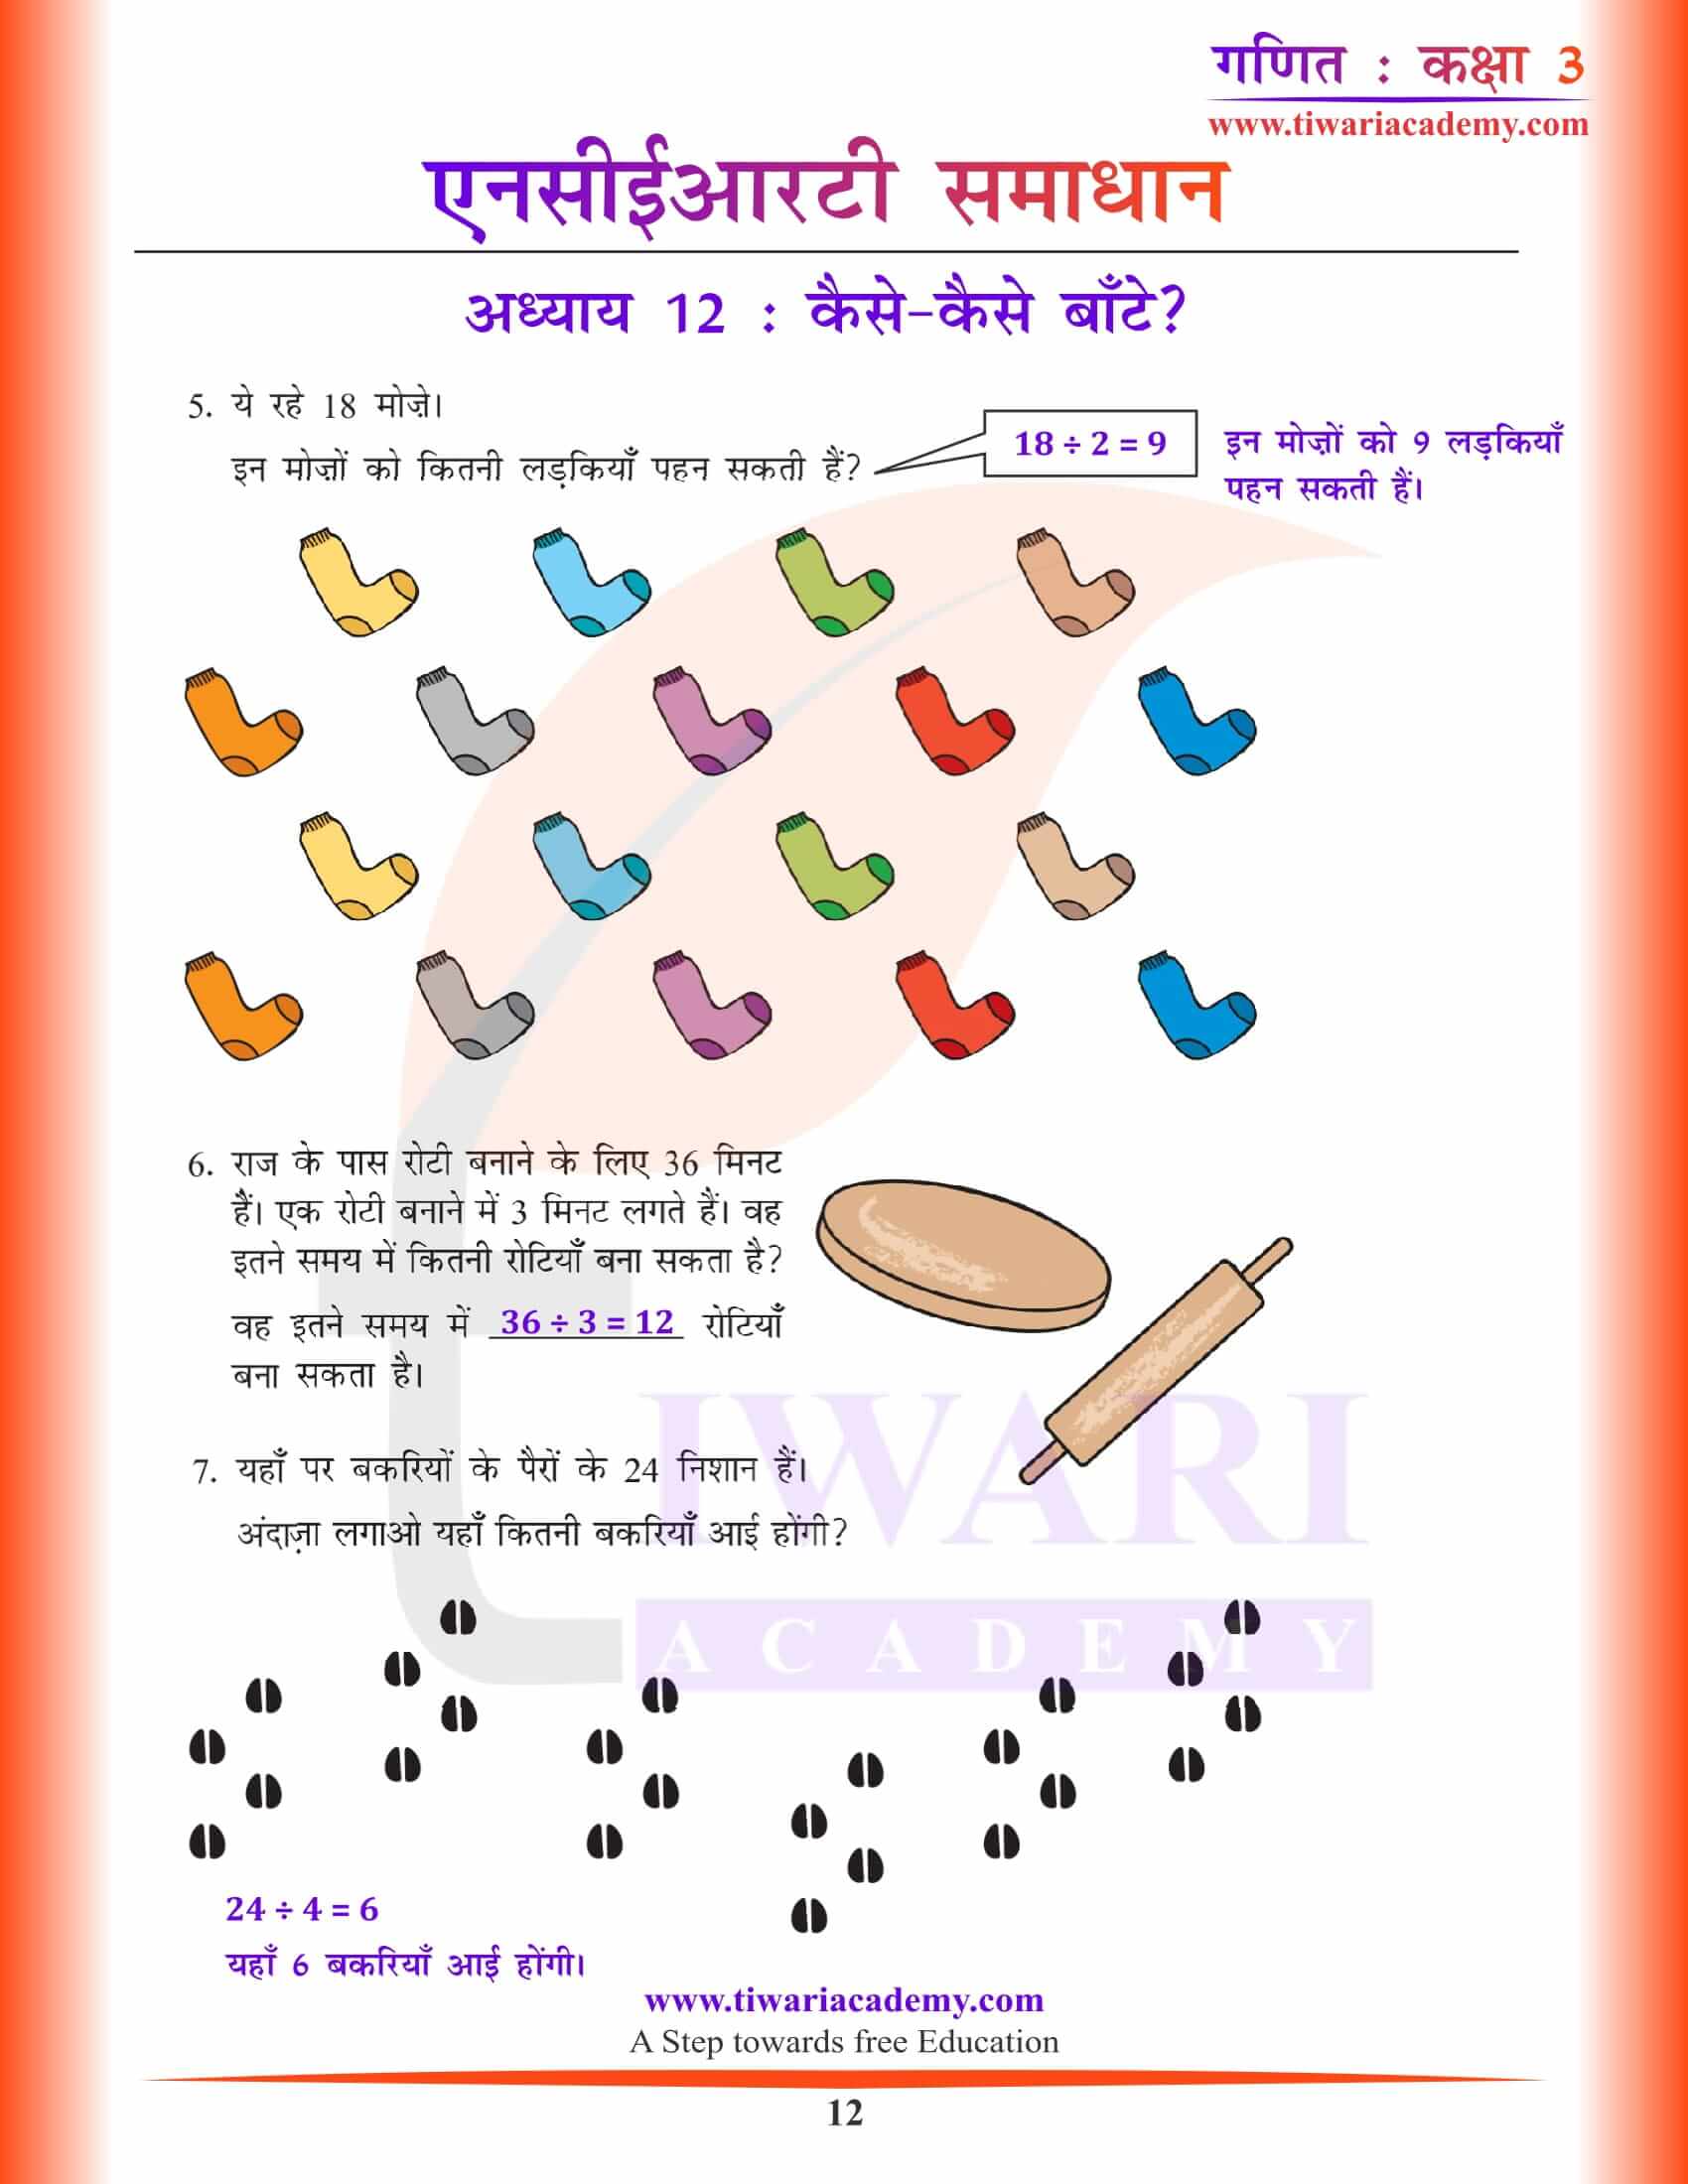 कक्षा 3 गणित अध्याय 12 के लिए गाइड हिंदी में